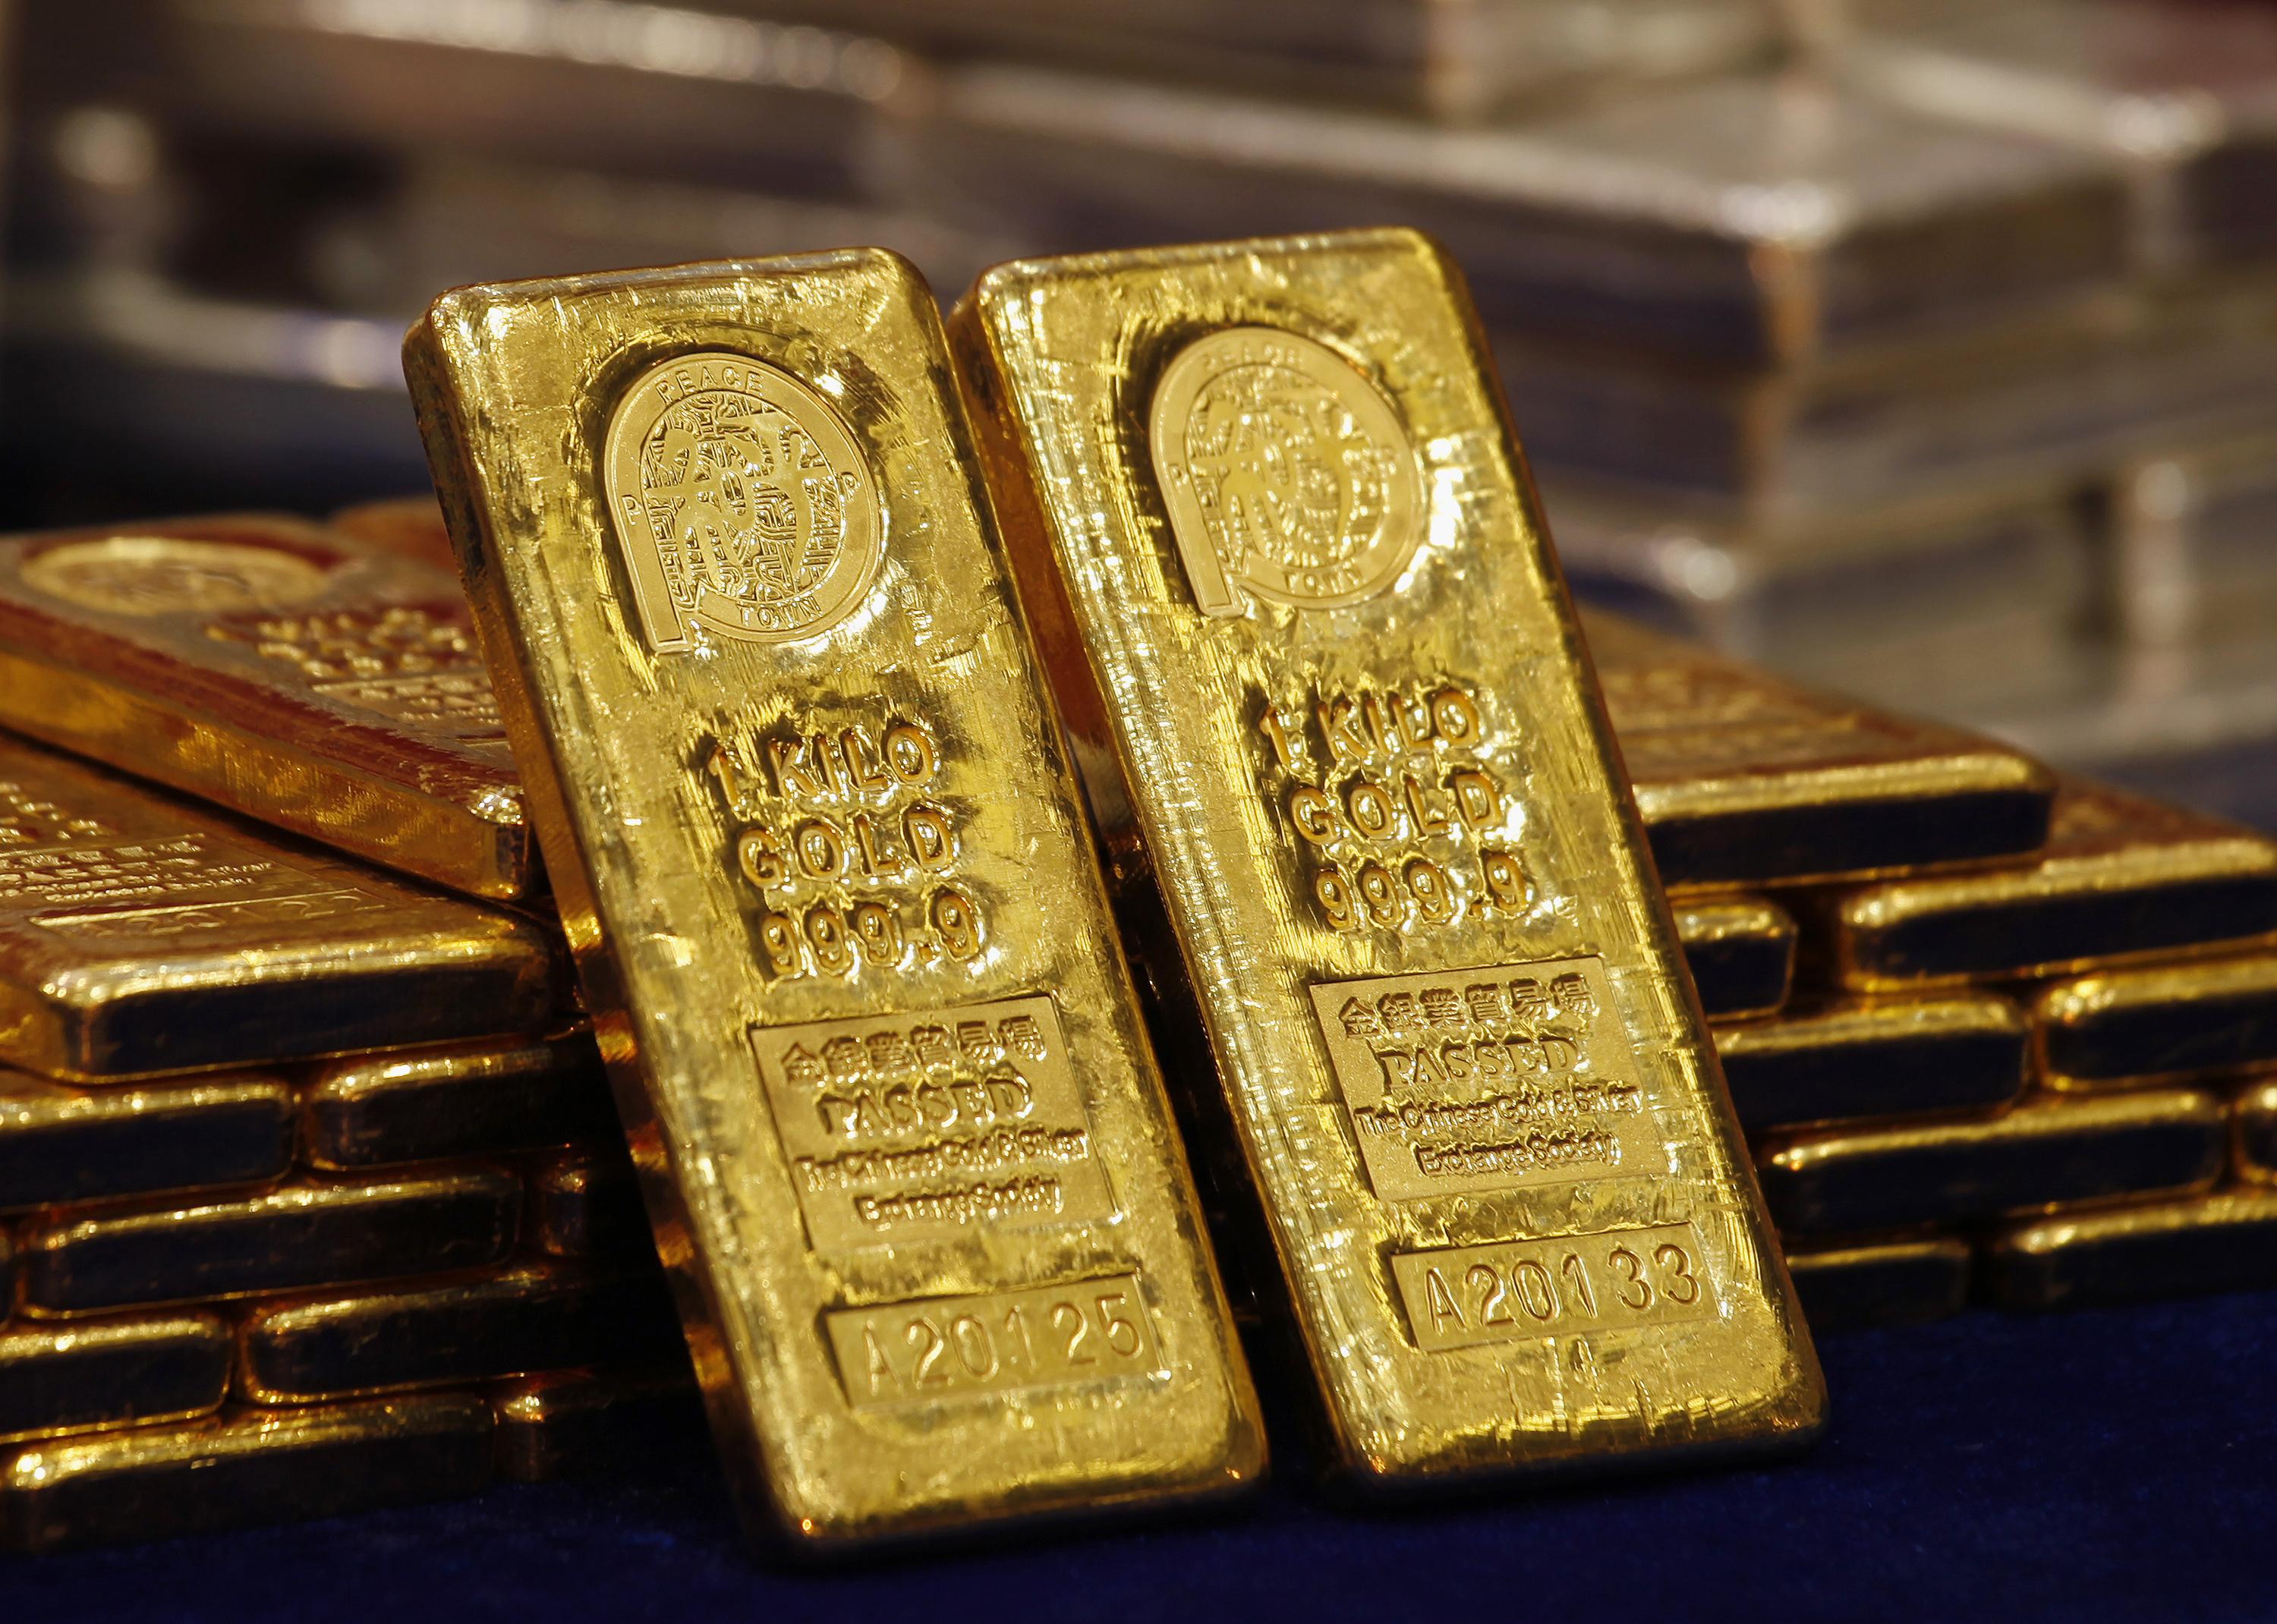 Χρυσός αξίας 1.8 εκατ. στους υπονόμους της Ελβετίας